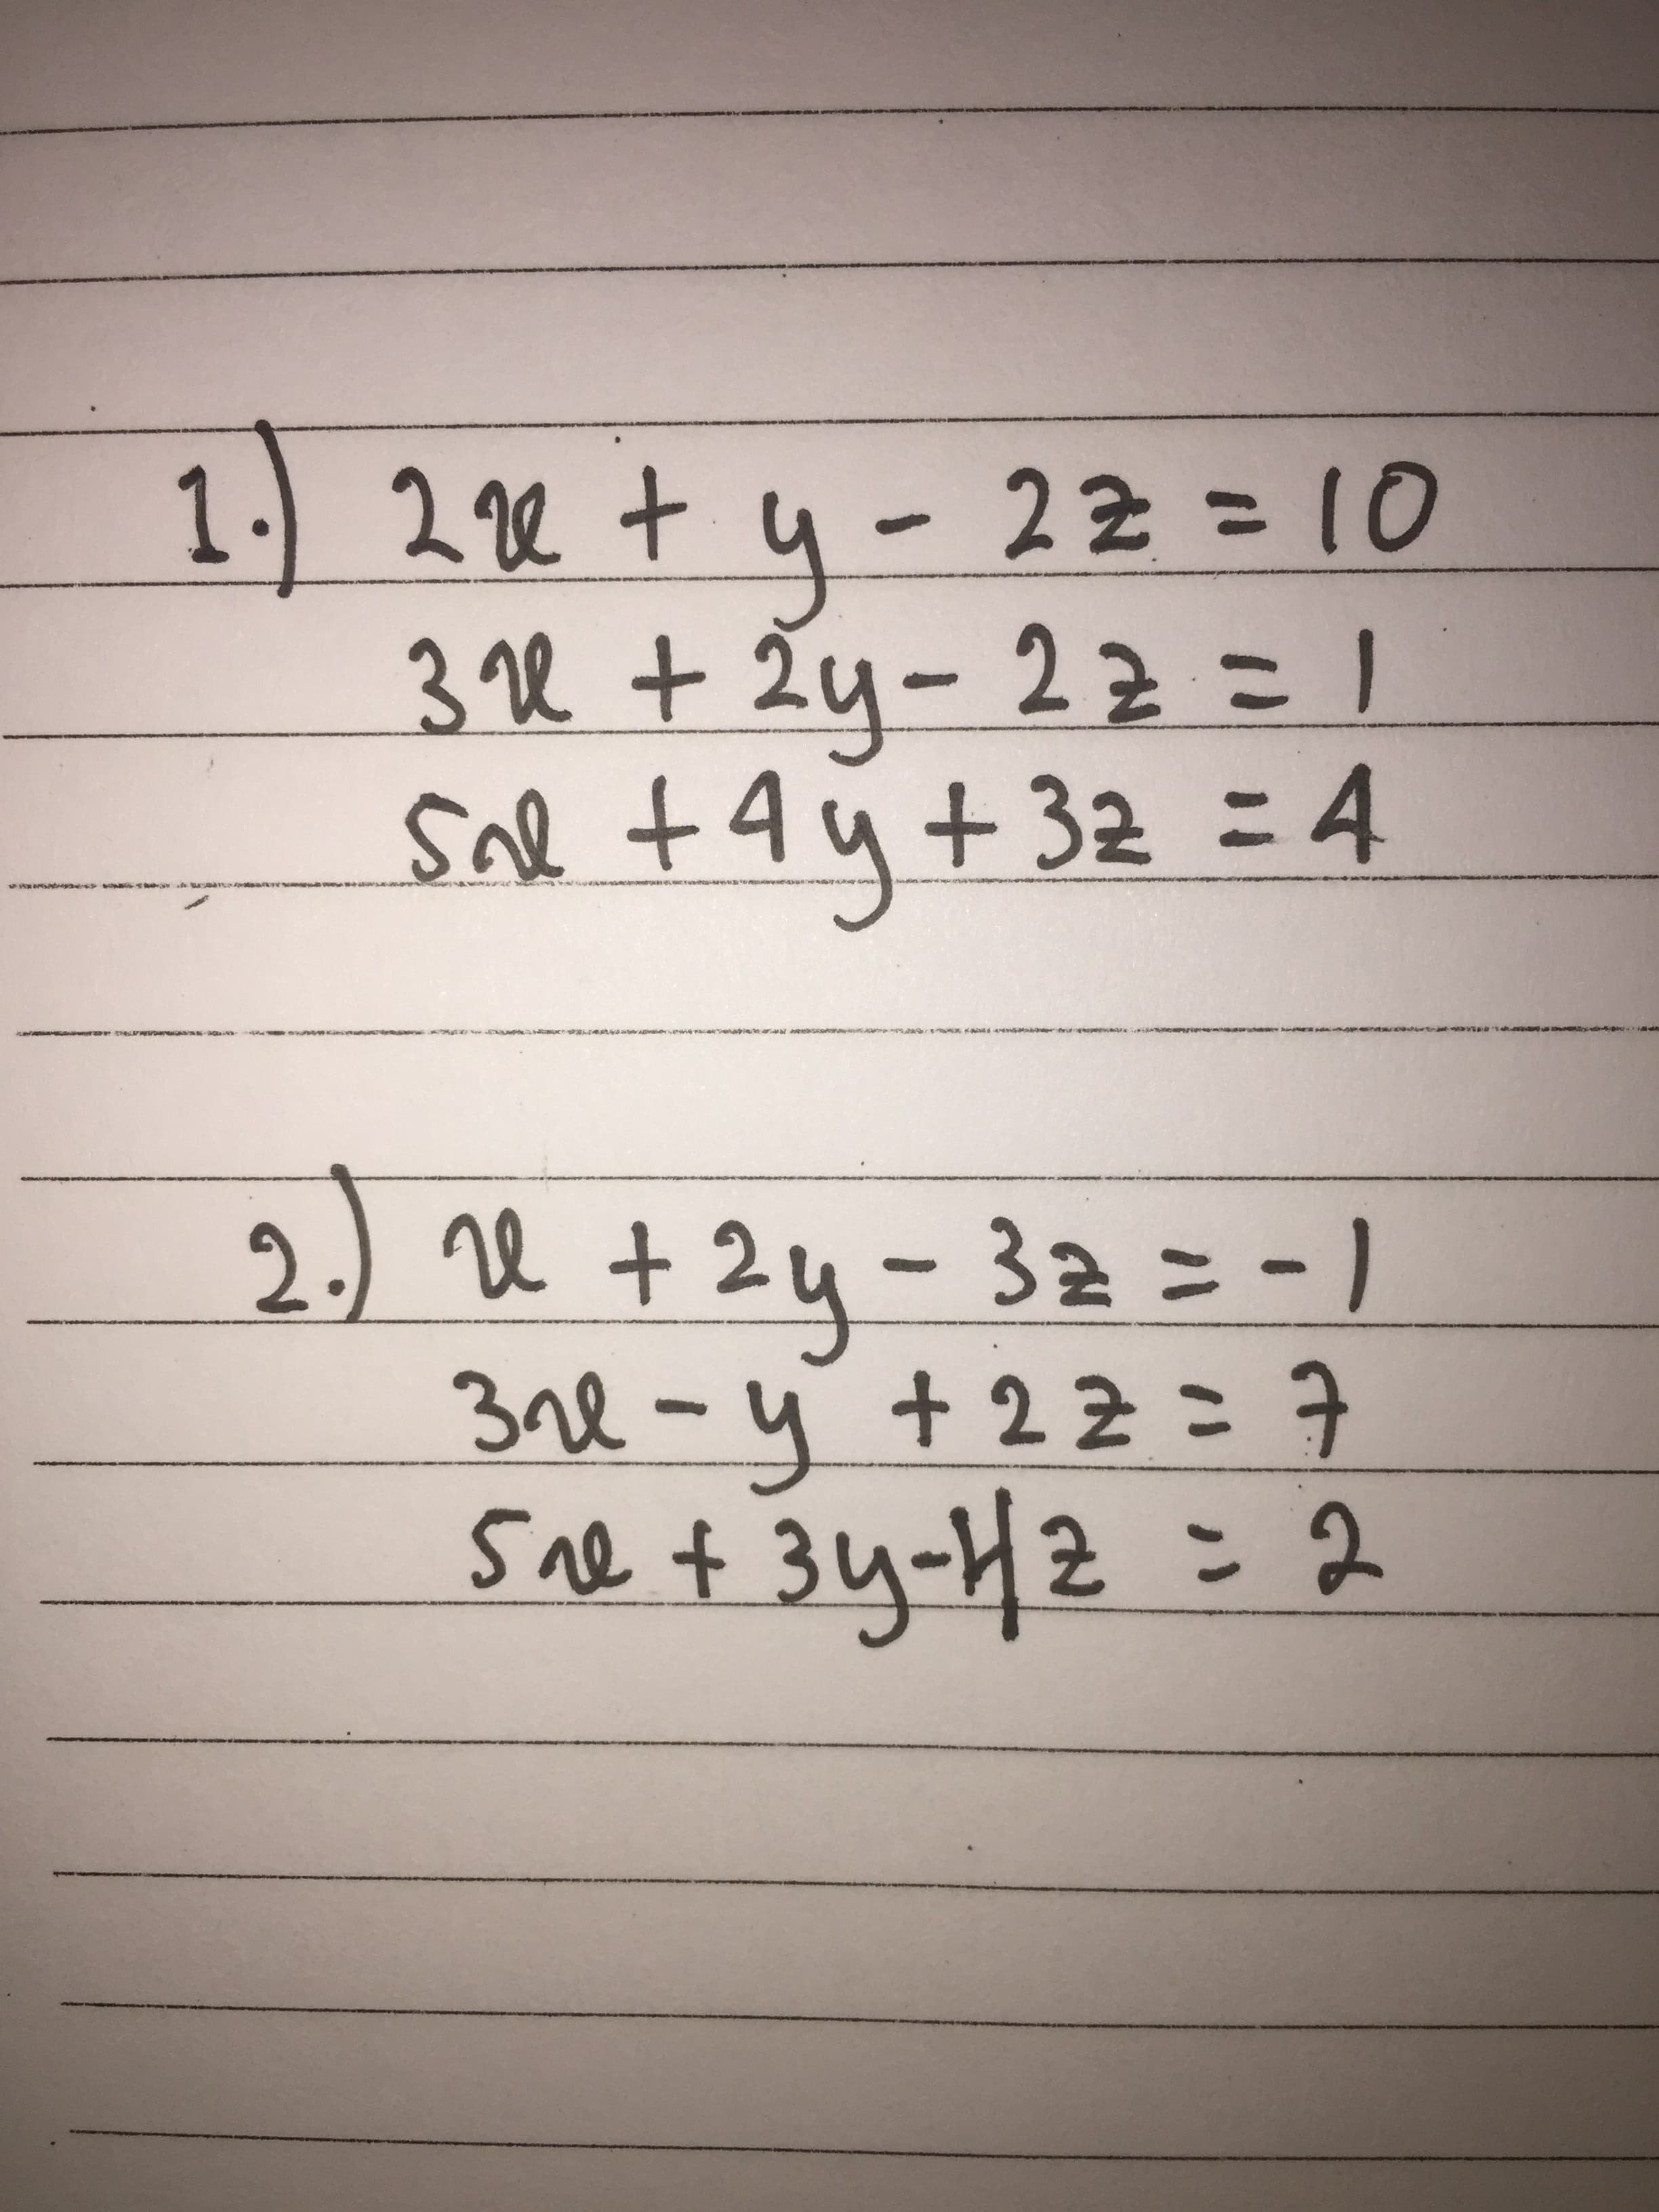 1. 2 2 + u-
3re + 2y-2=
Sal +A4+32 = 4
22310
%3D
y-
22こ1
2) e + 24-32ニ-)
3nl-y t22こ子
sae f 34-42 = 2
re +2
